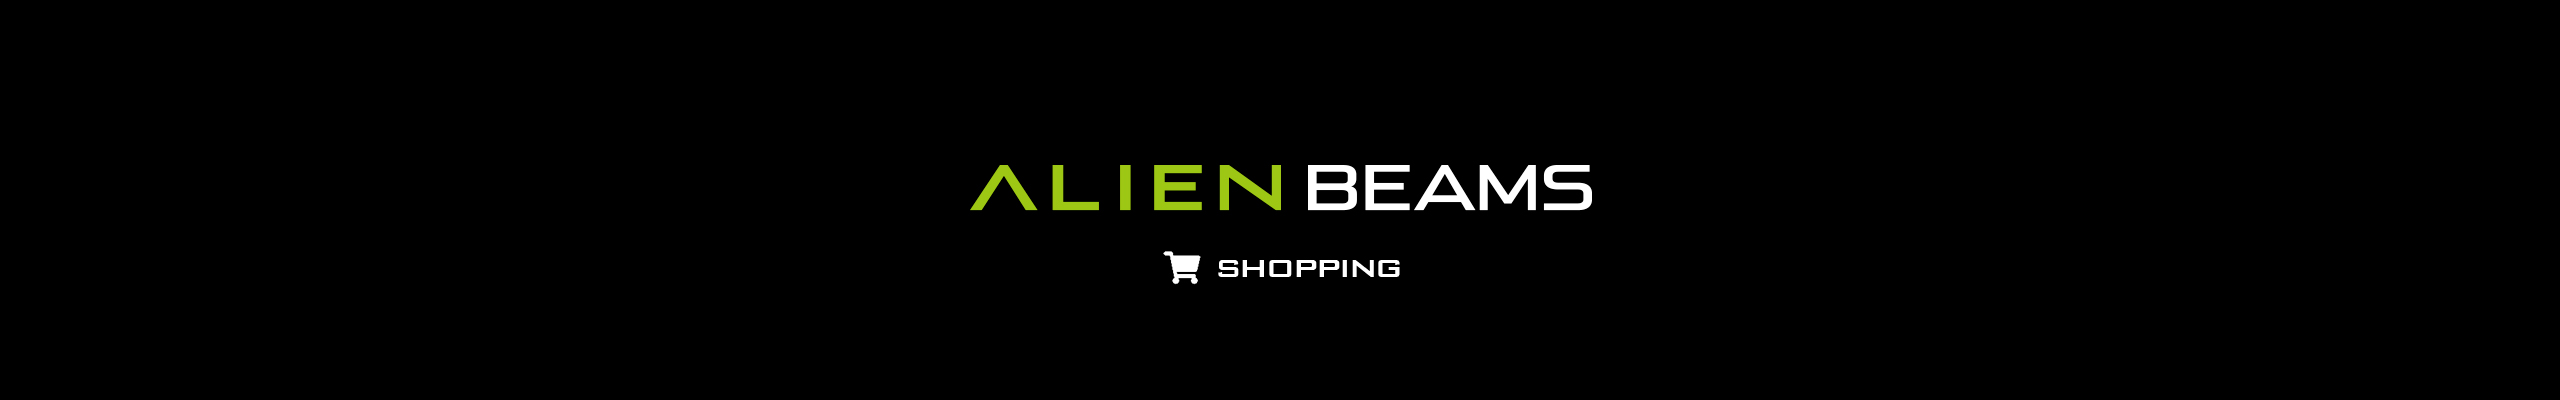 ALIEN BEAMS ショッピング